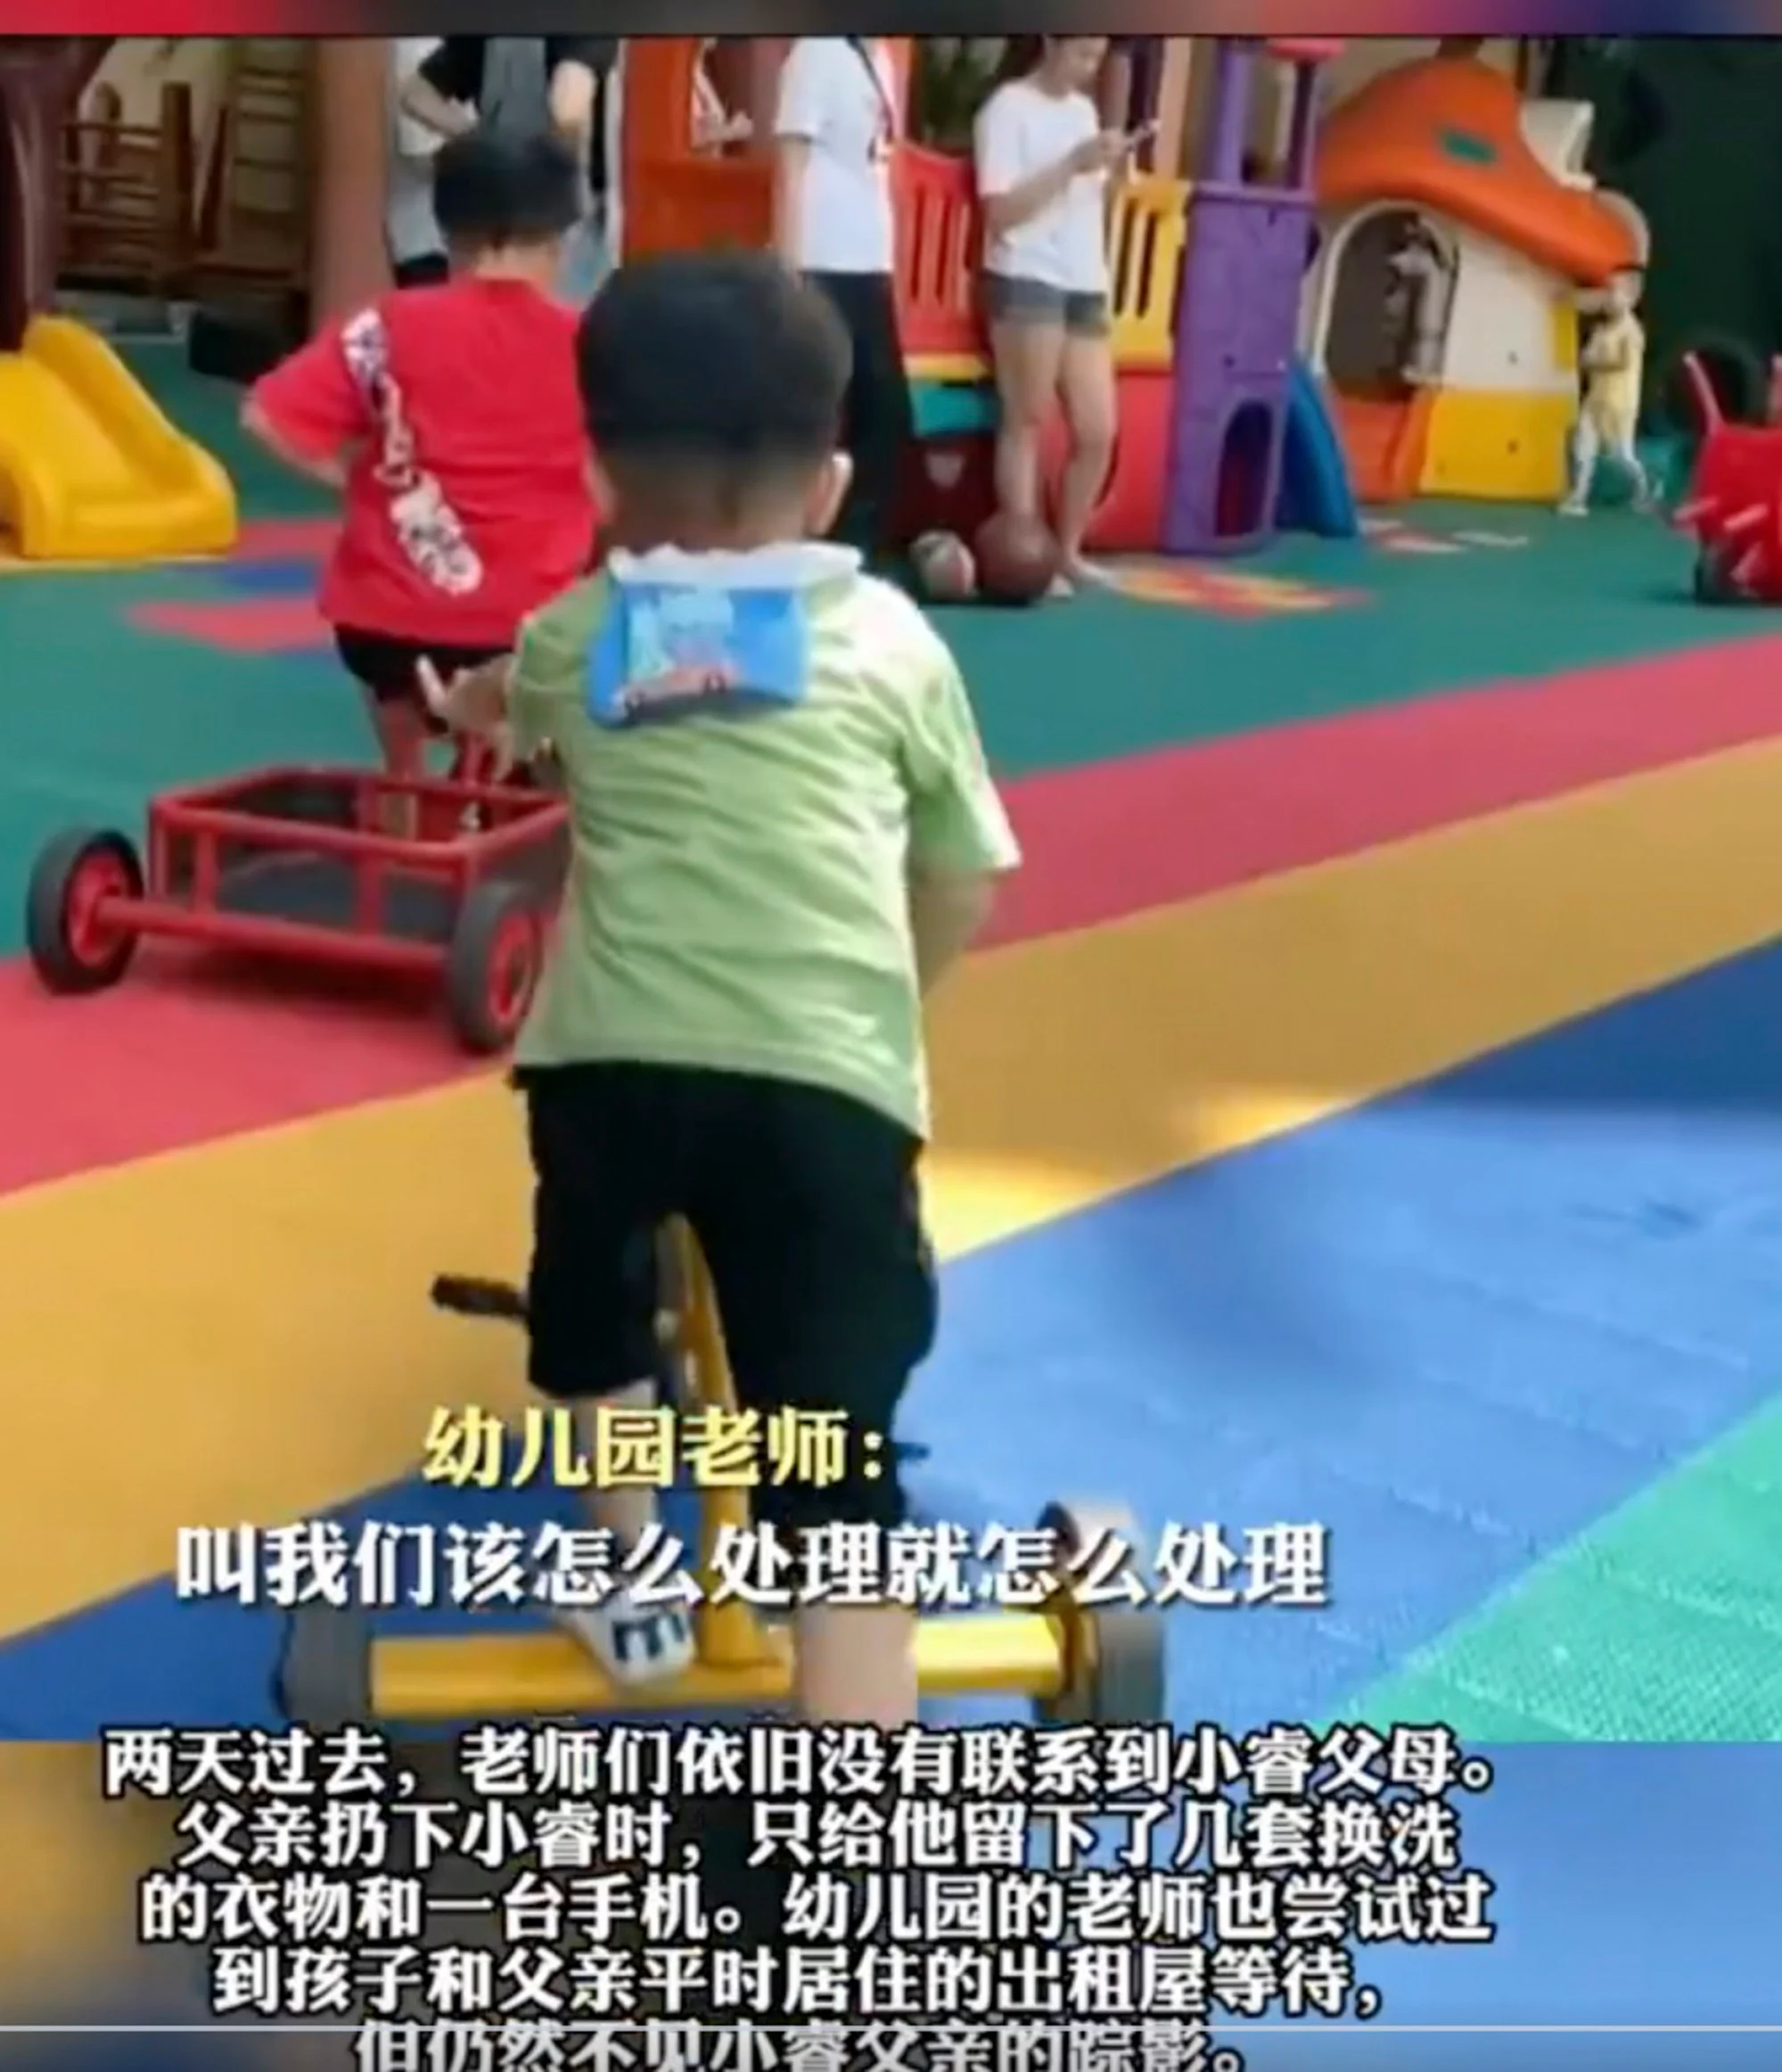 Việc bỏ rơi trẻ em không phải là hiếm ở Trung Quốc, nơi có 193.000 trẻ mồ côi vào năm 2020. 